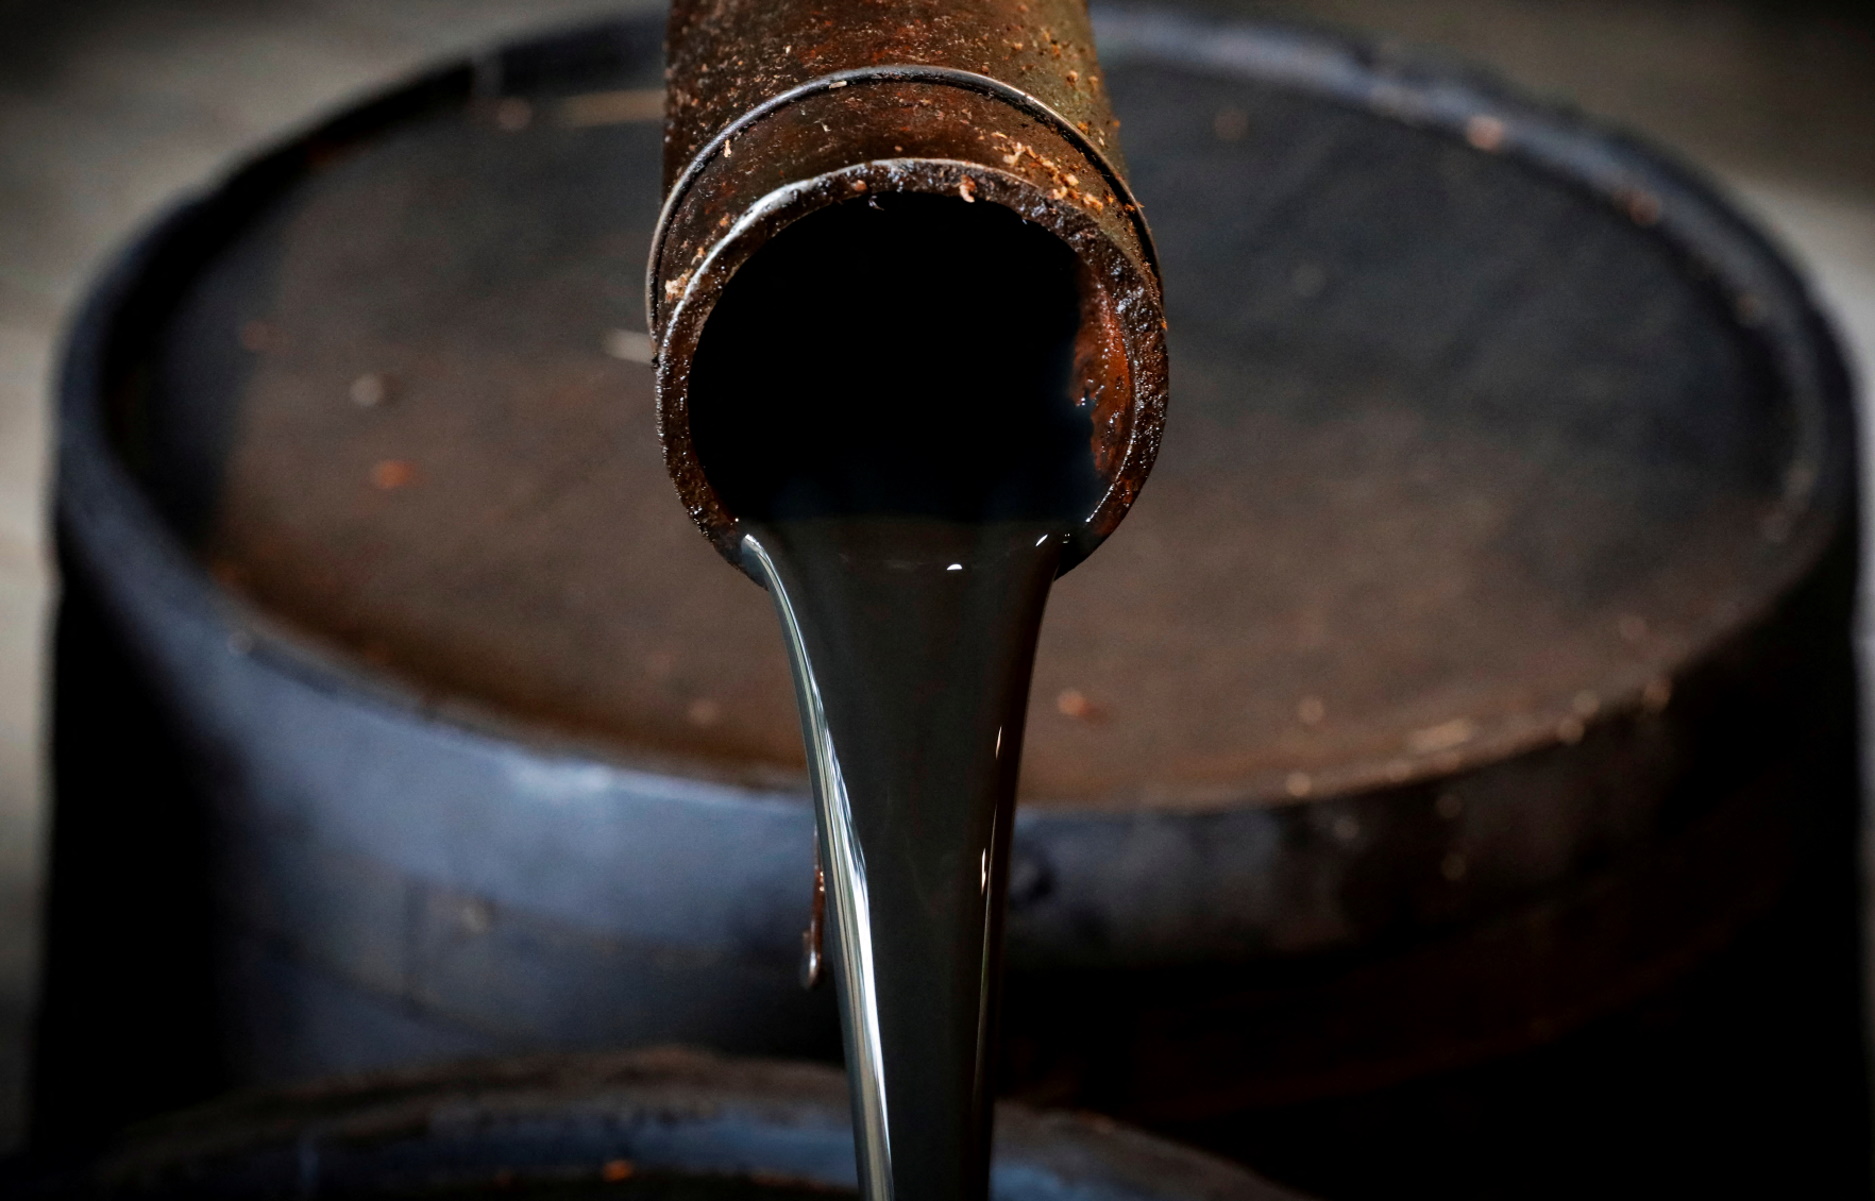 Πετρέλαιο: Παίρνουν την ανηφόρα οι τιμές – Σαουδική Αραβία και Ρωσία προχωρούν σε περικοπές στην προσφορά αργού